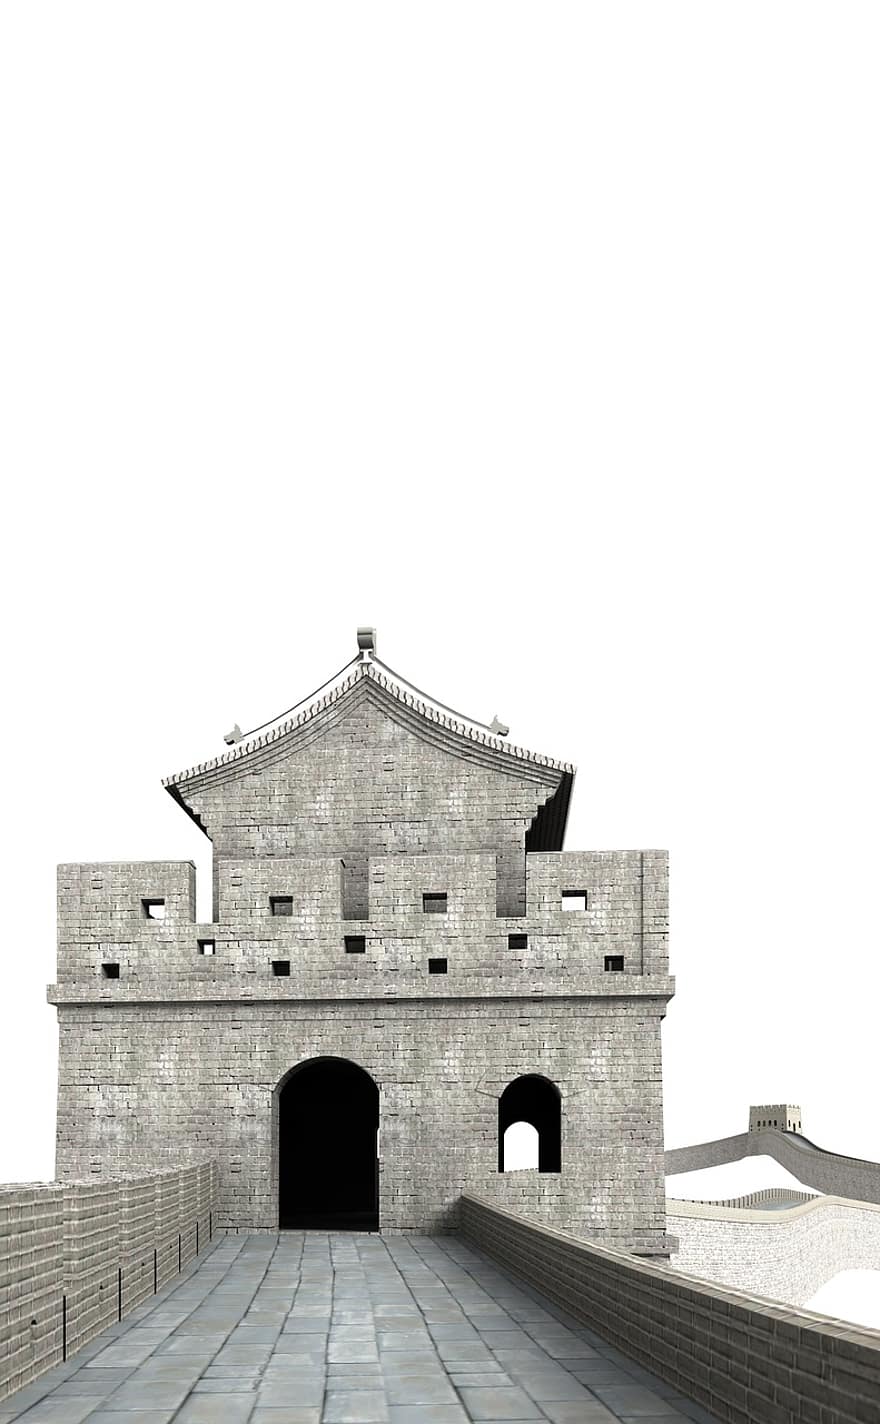 velký, zeď, Čína, budova, kostel, Zajímavosti, historicky, turistů, atrakce, mezník, fasáda